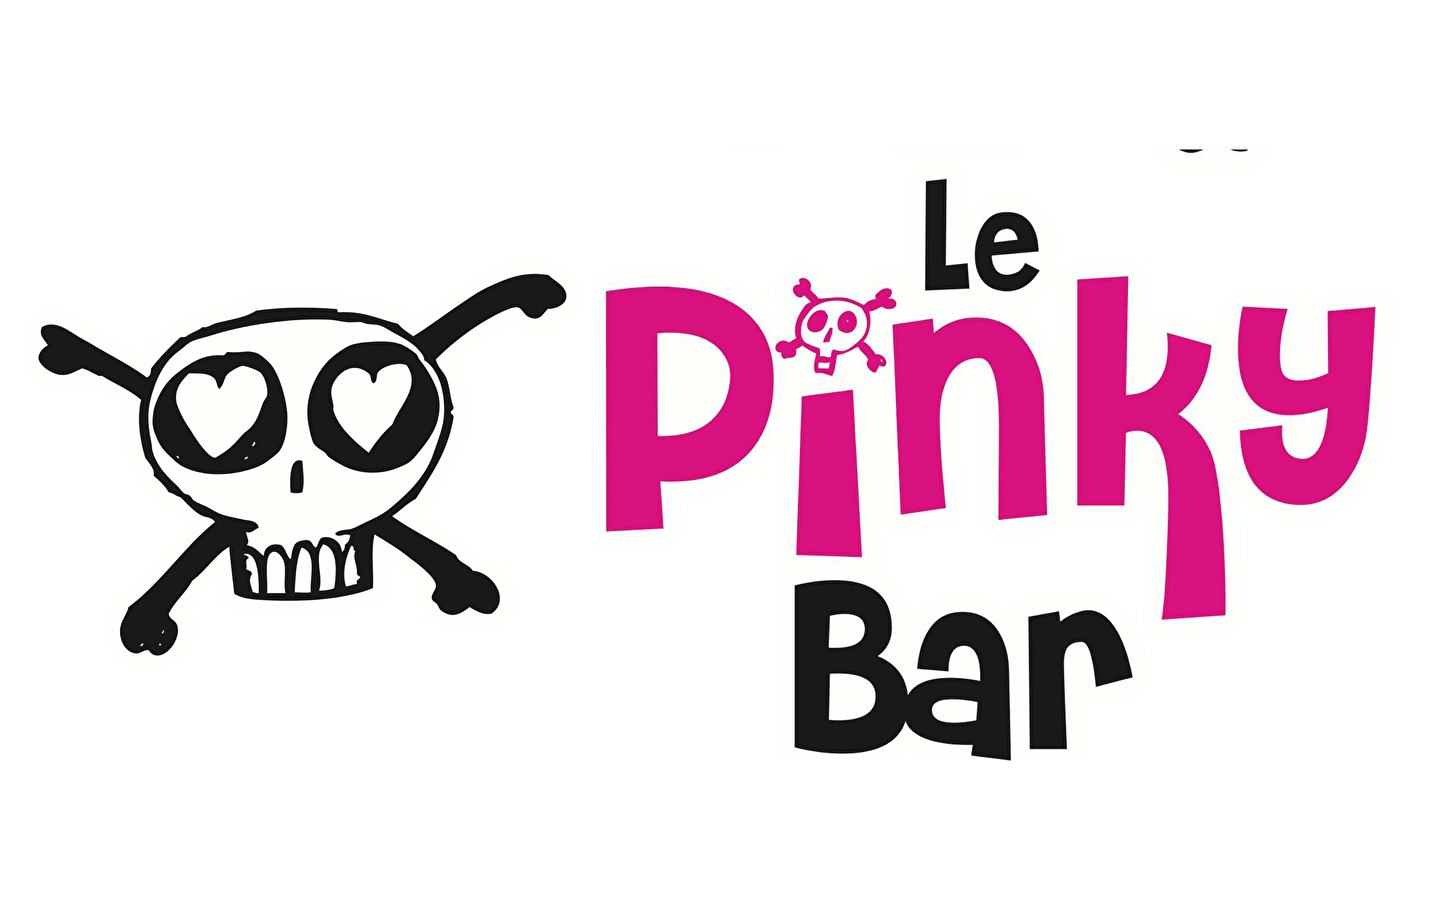 Die Prog' der Pinky Bar